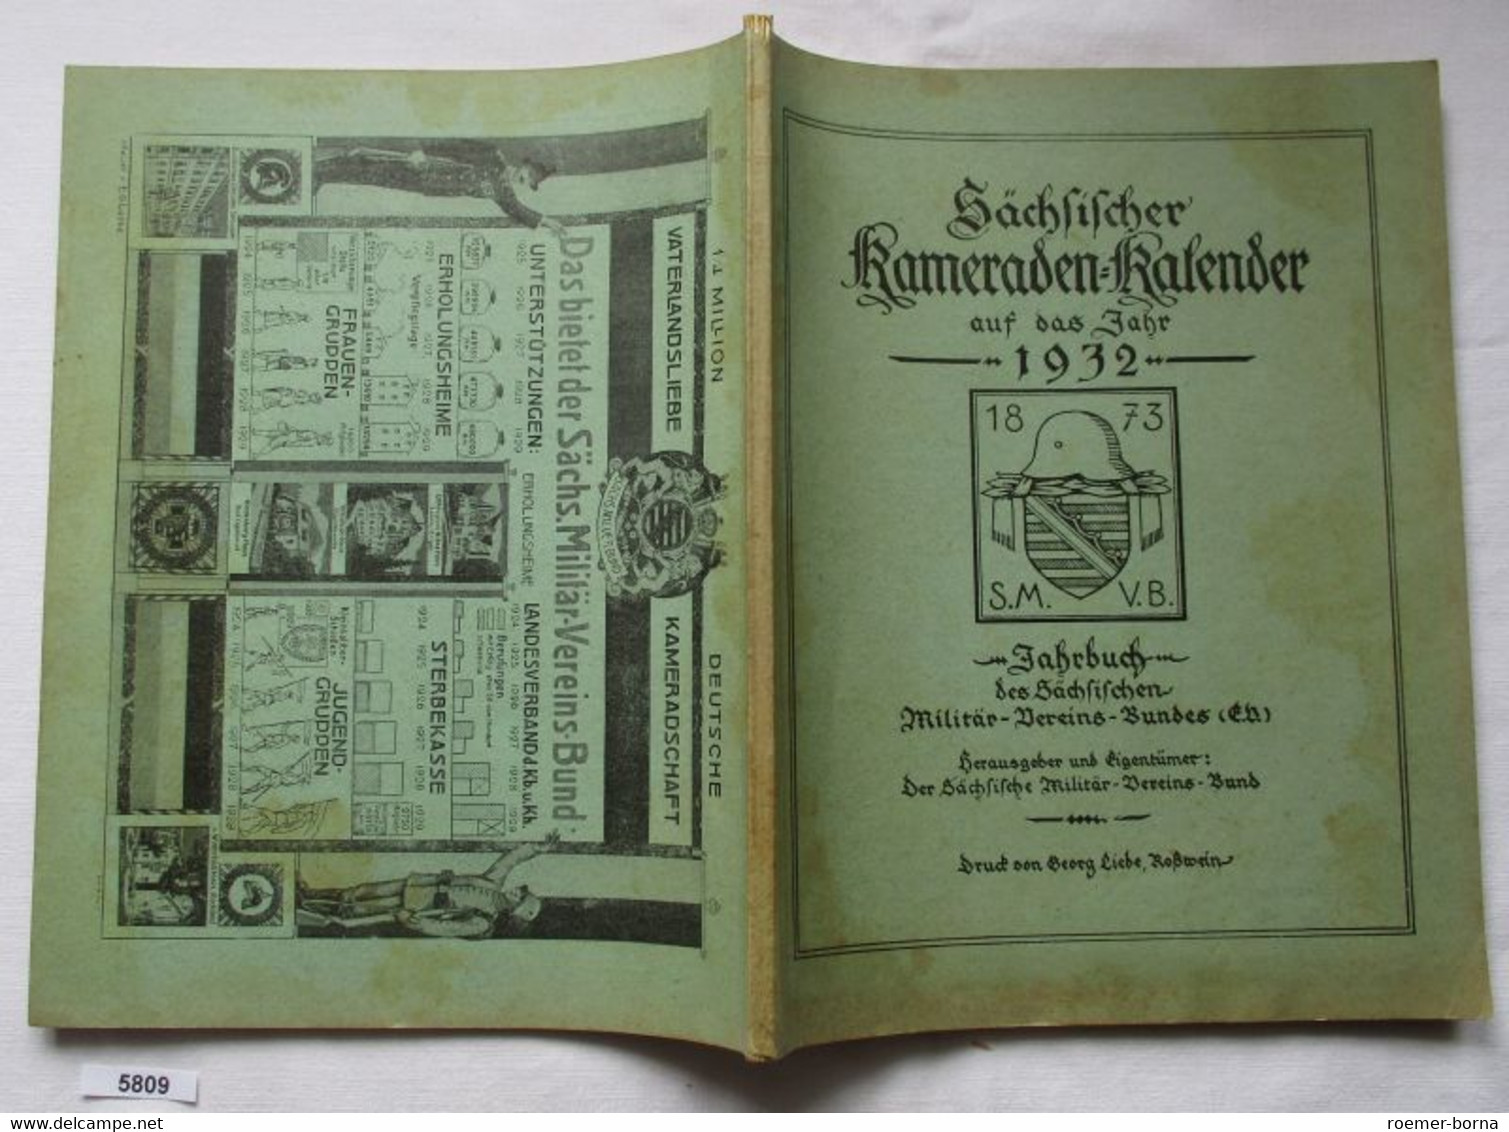 Sächsischer Kameraden-Kalender Auf Das Jahr 1932 - Jahrbuch Des Sächsischen Militär-Vereins-Bundes (E.V.) - Calendari